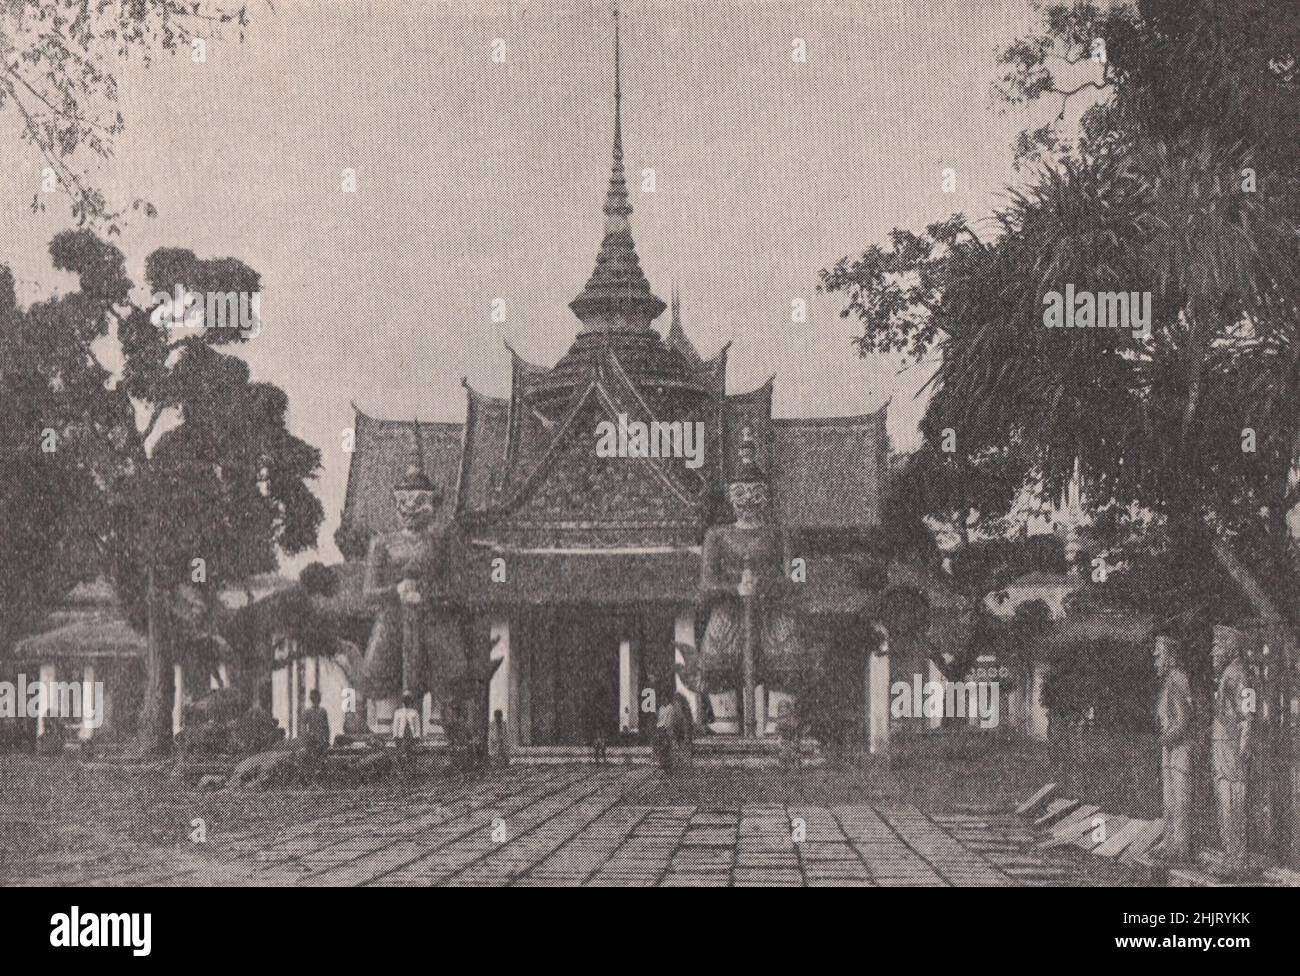 Riesige Figuren bewachen das Tor von Wat Chang. Thailand. Siam (1923) Stockfoto